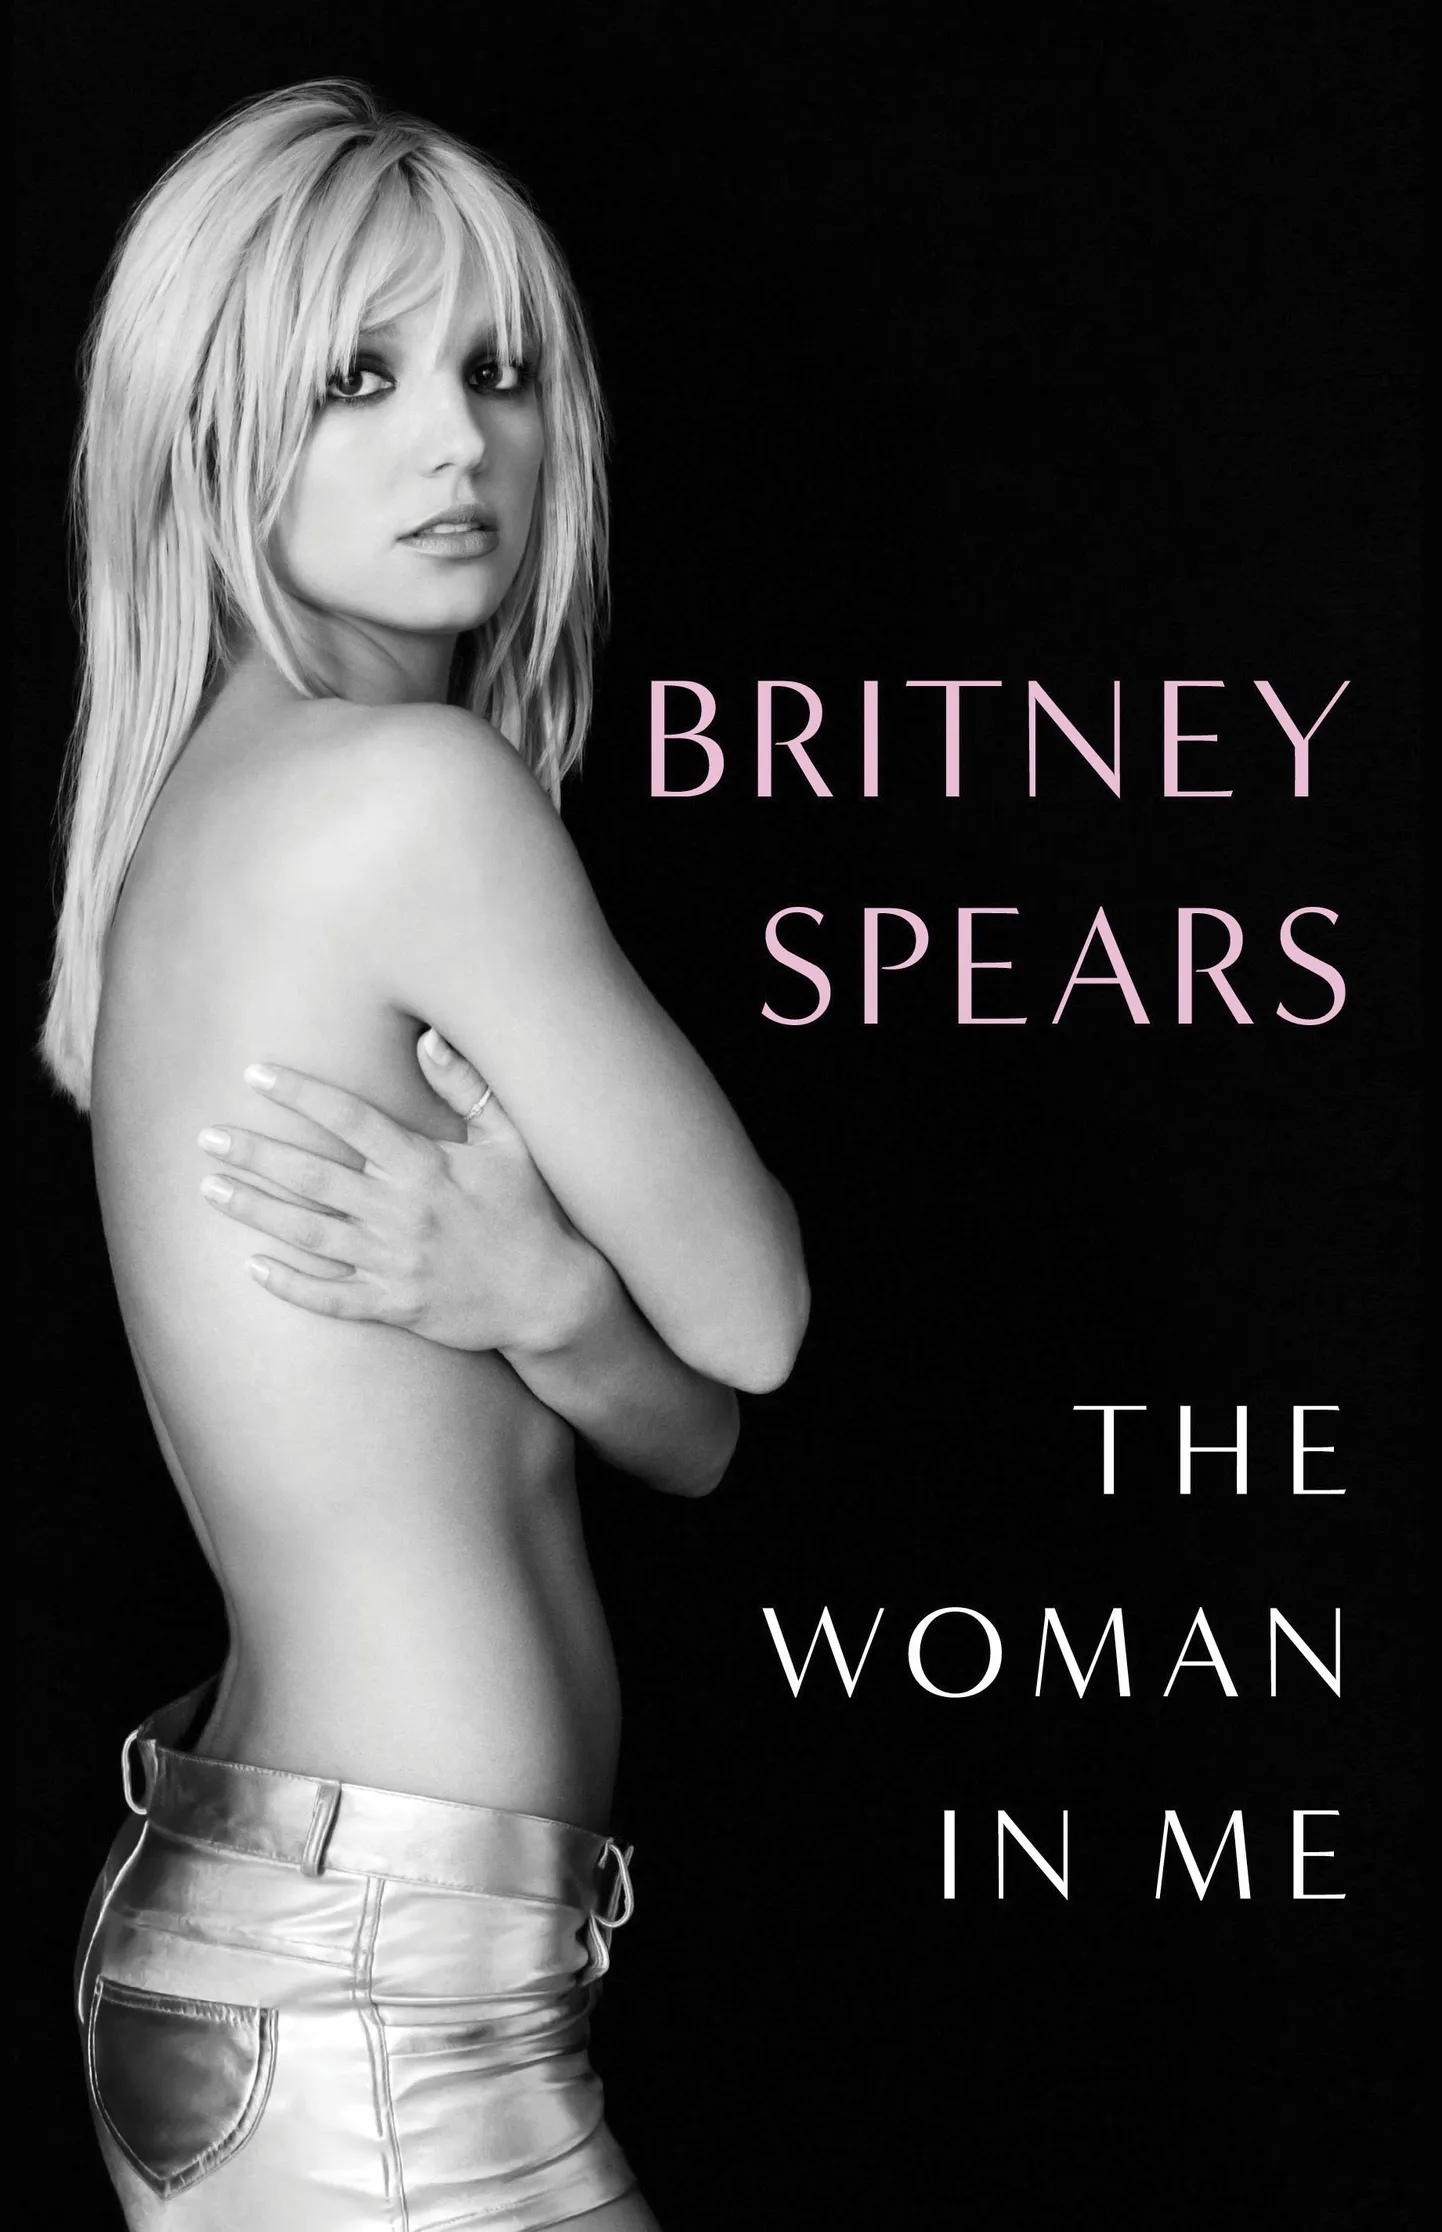 Книга Бритни Спирс "Женщина во мне".